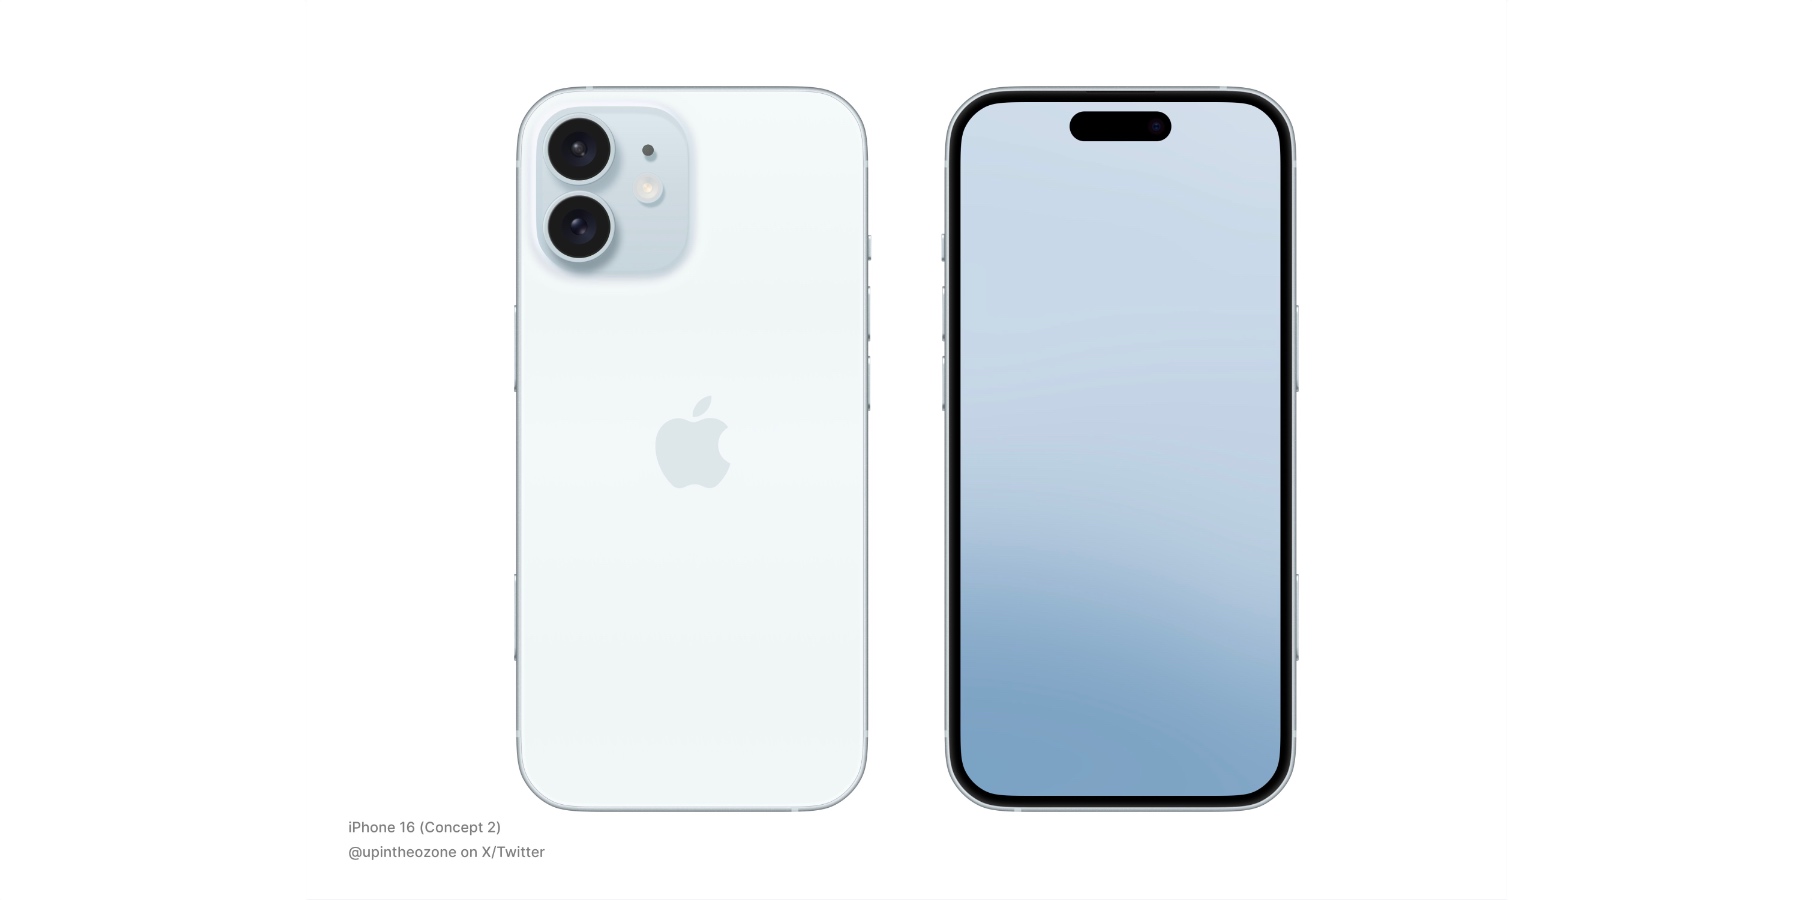 iPhone 16 design concept.